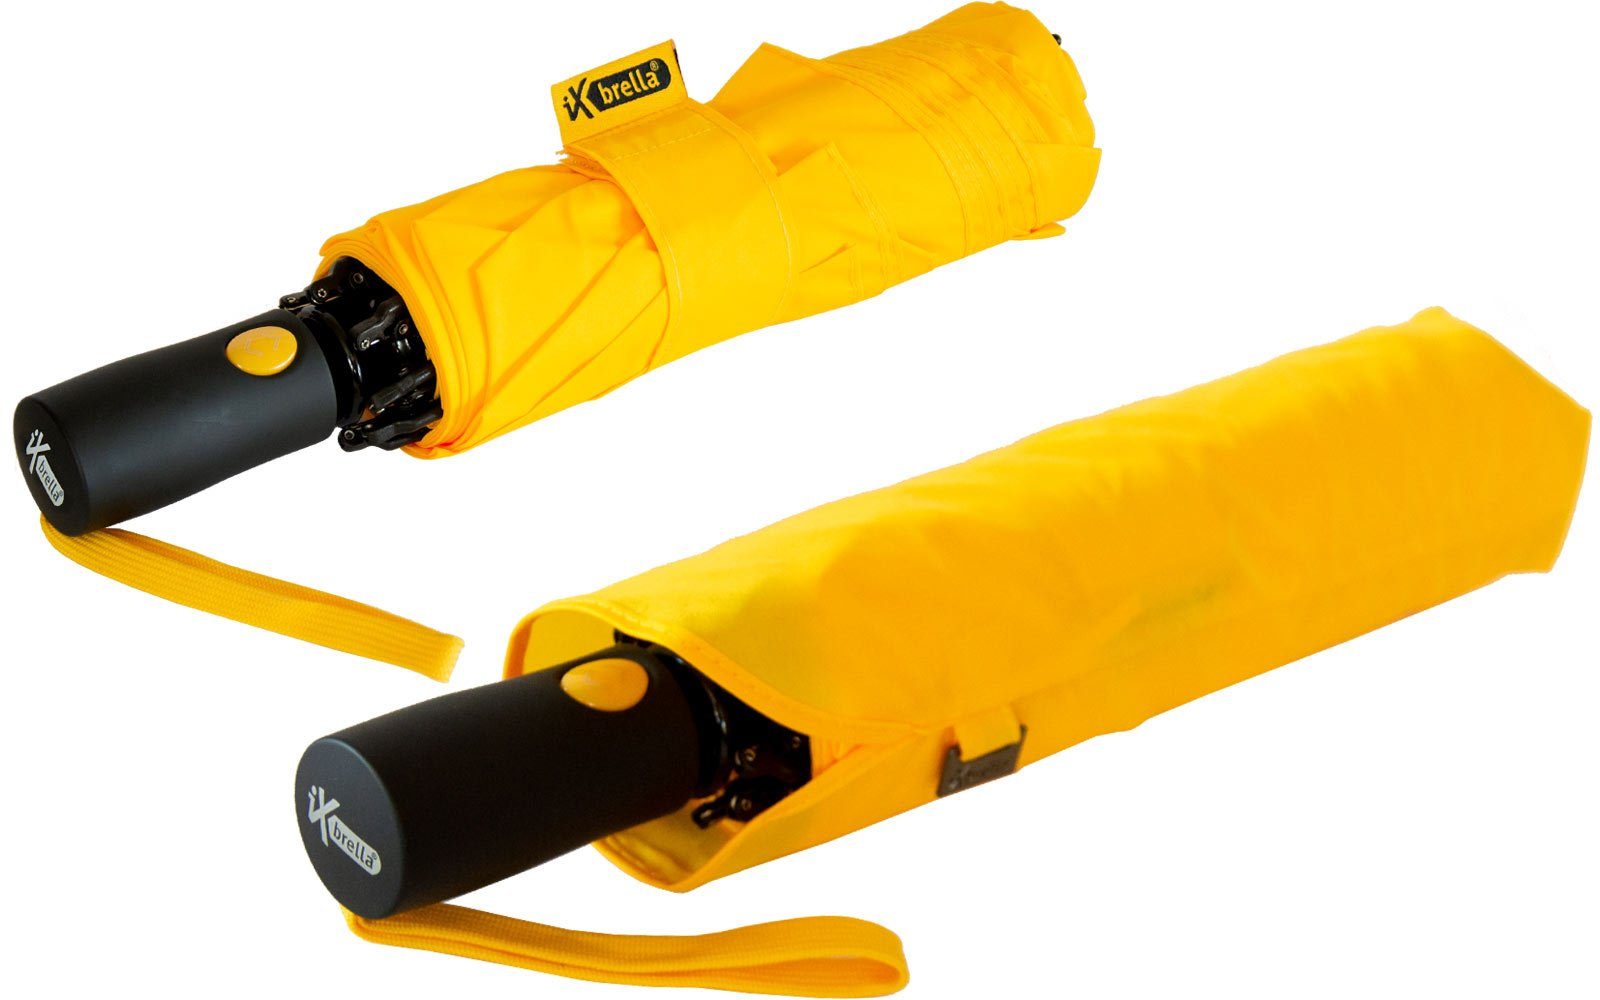 iX-brella Reverse stabilen Fiberglas-Automatiksch, bunten Taschenregenschirm öffnender mit Speichen gelb umgekehrt